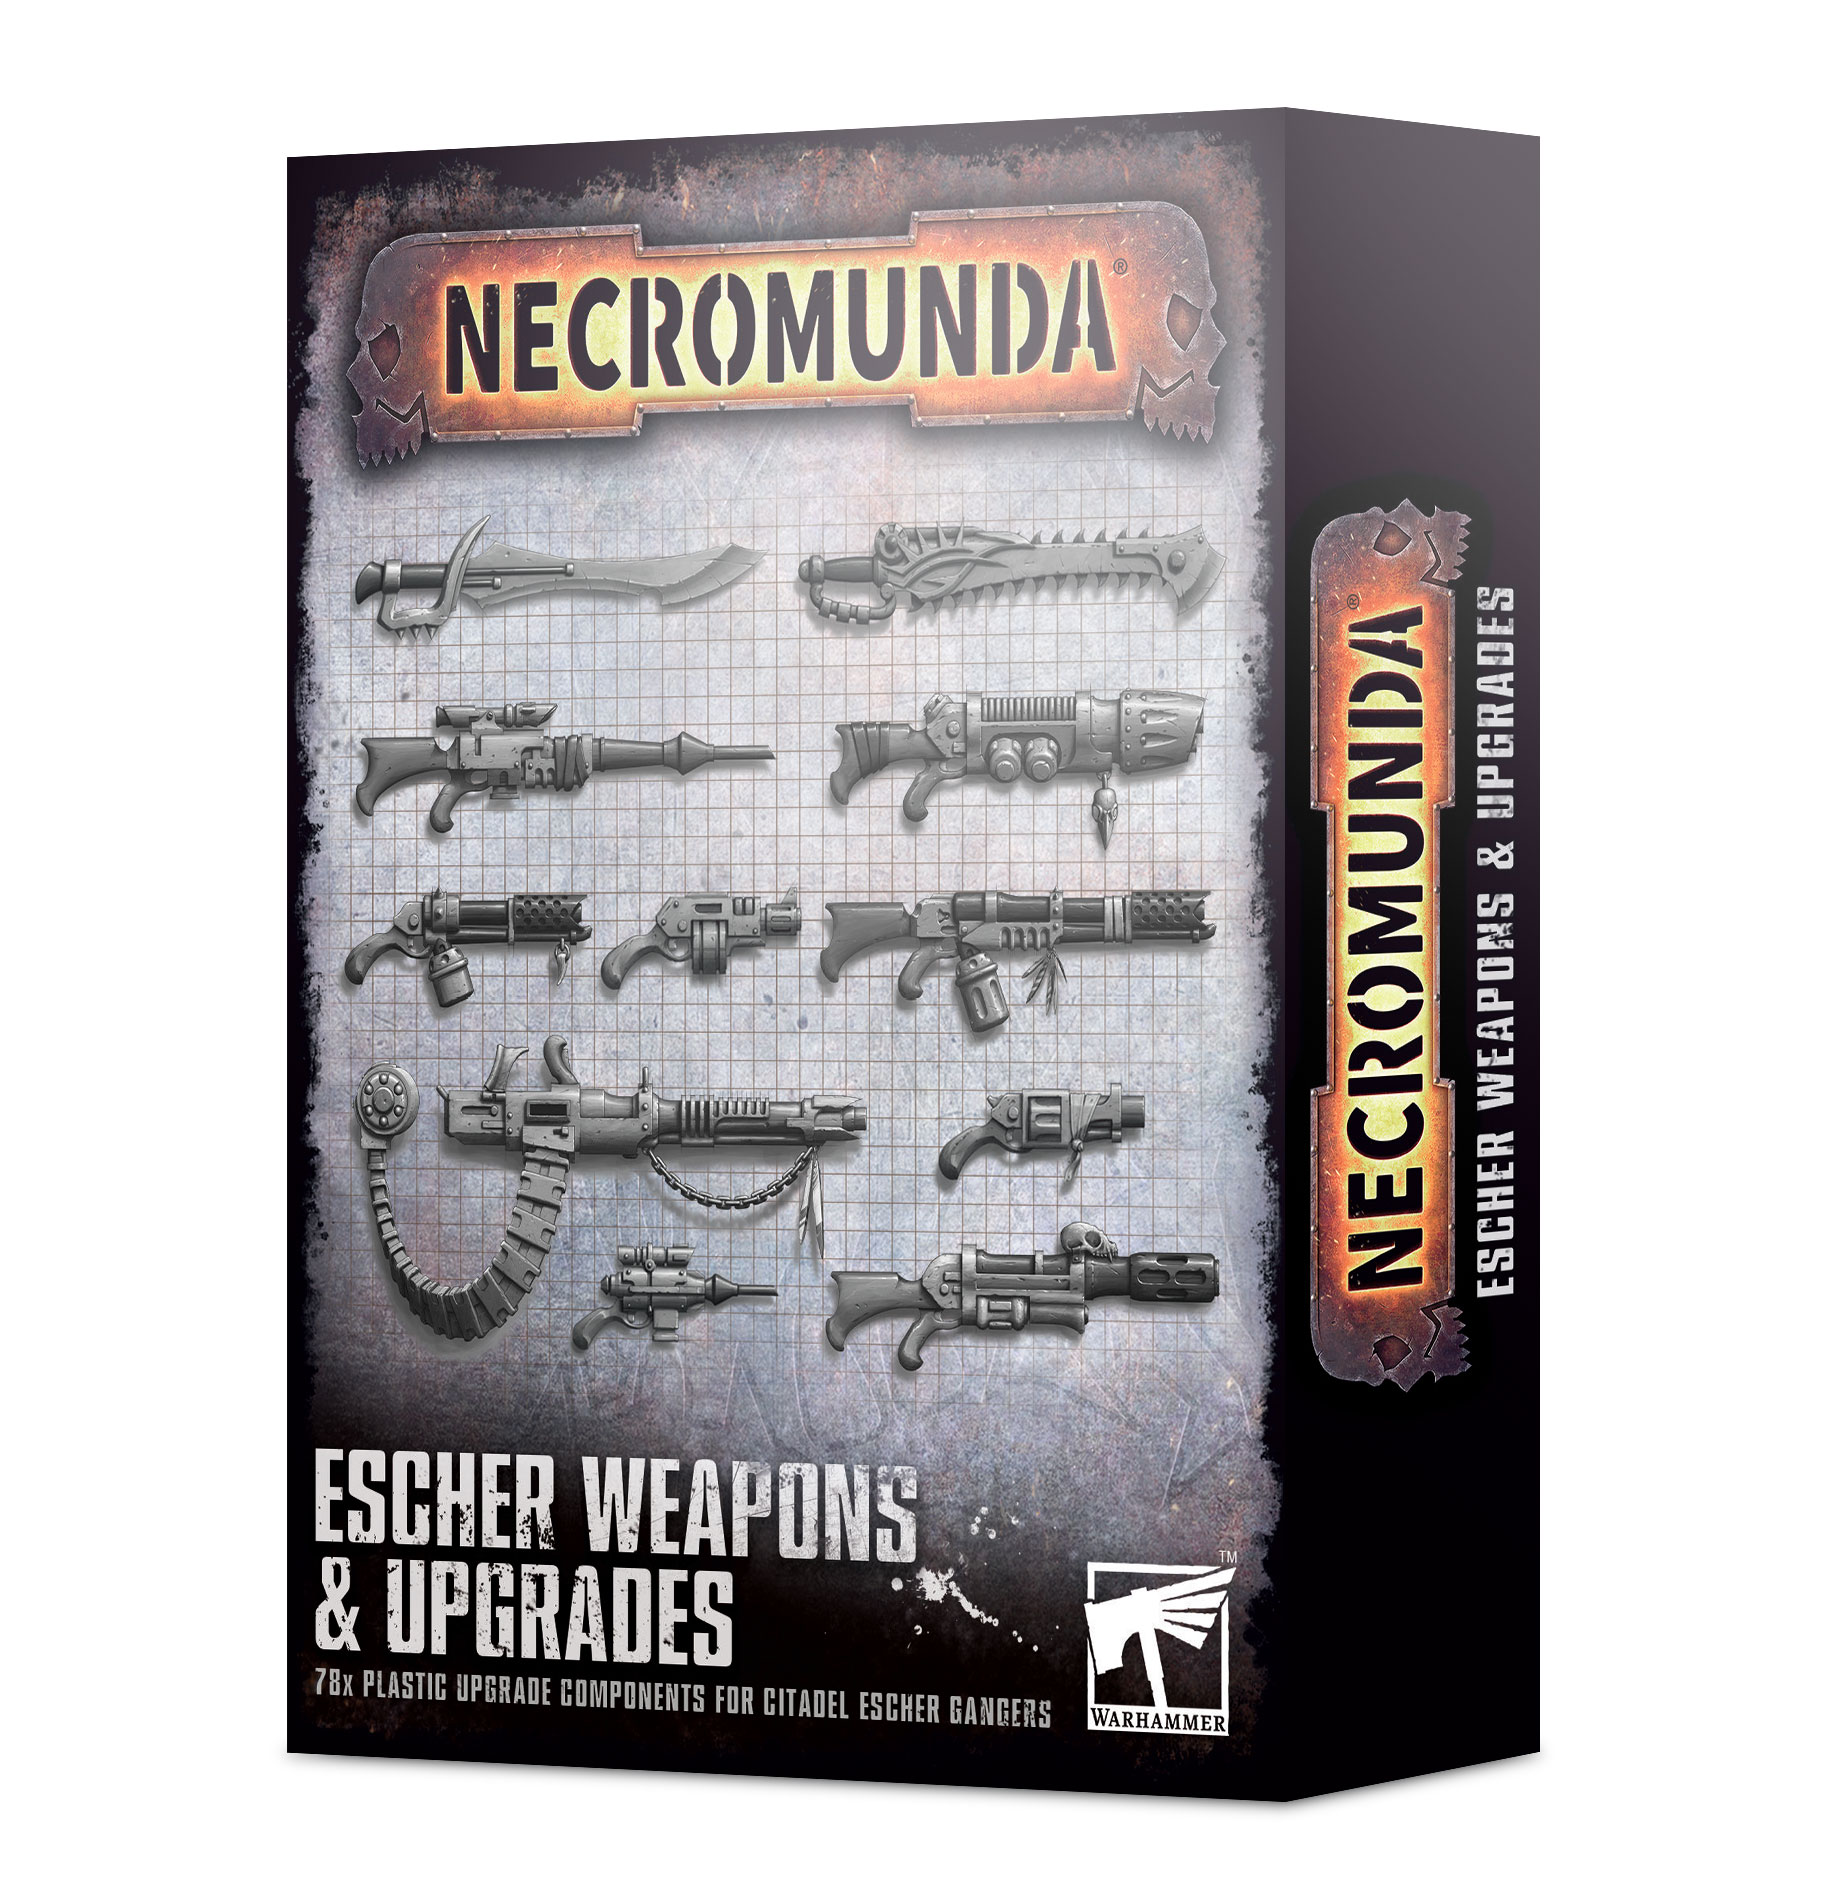 Escher Weapons & Upgrades - 300-74 - Necromunda